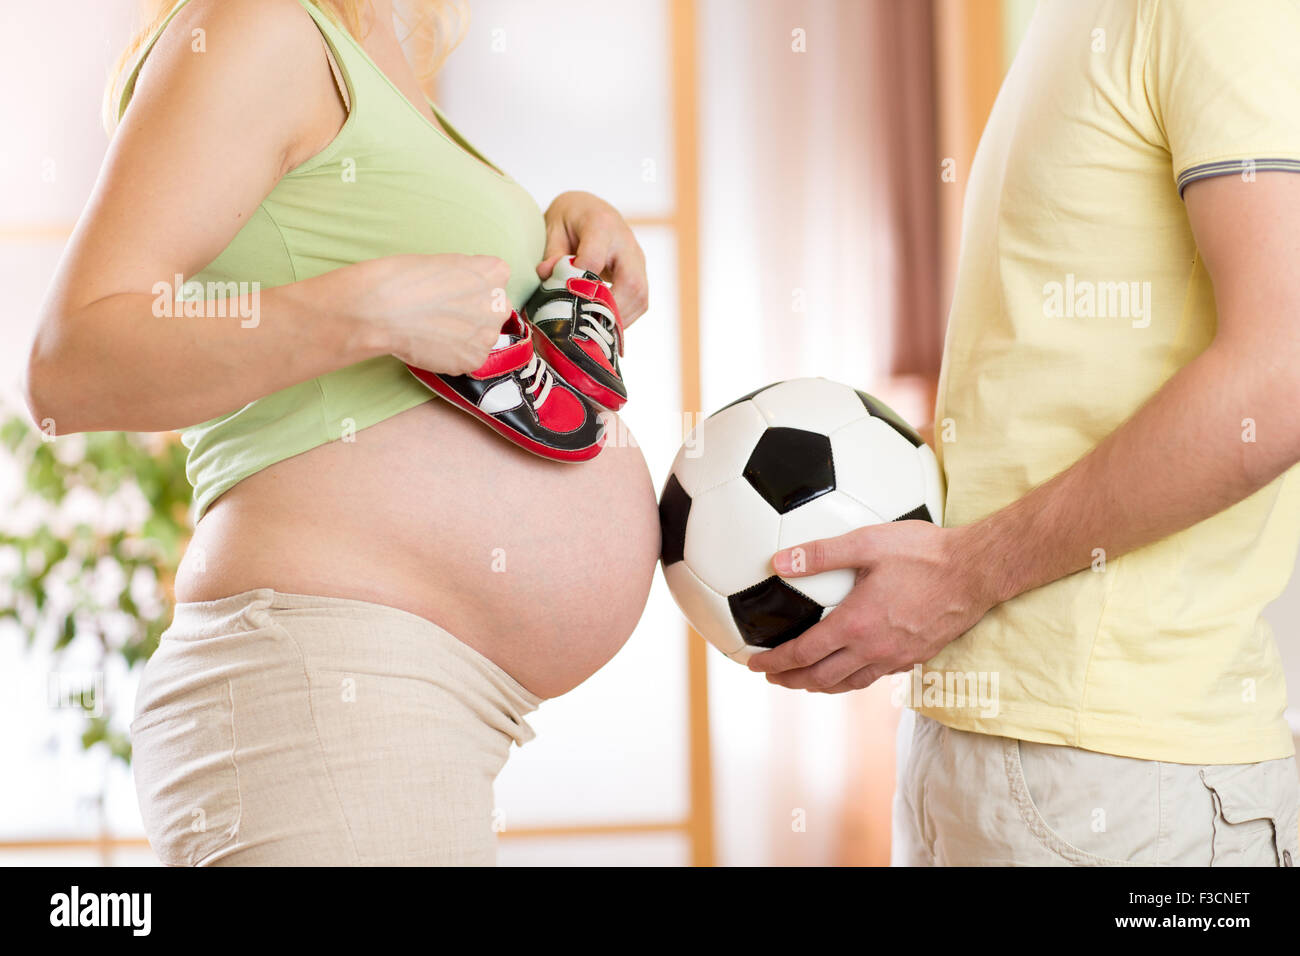 Close-up de una mujer embarazada y su esposo sosteniendo un balón de fútbol Foto de stock